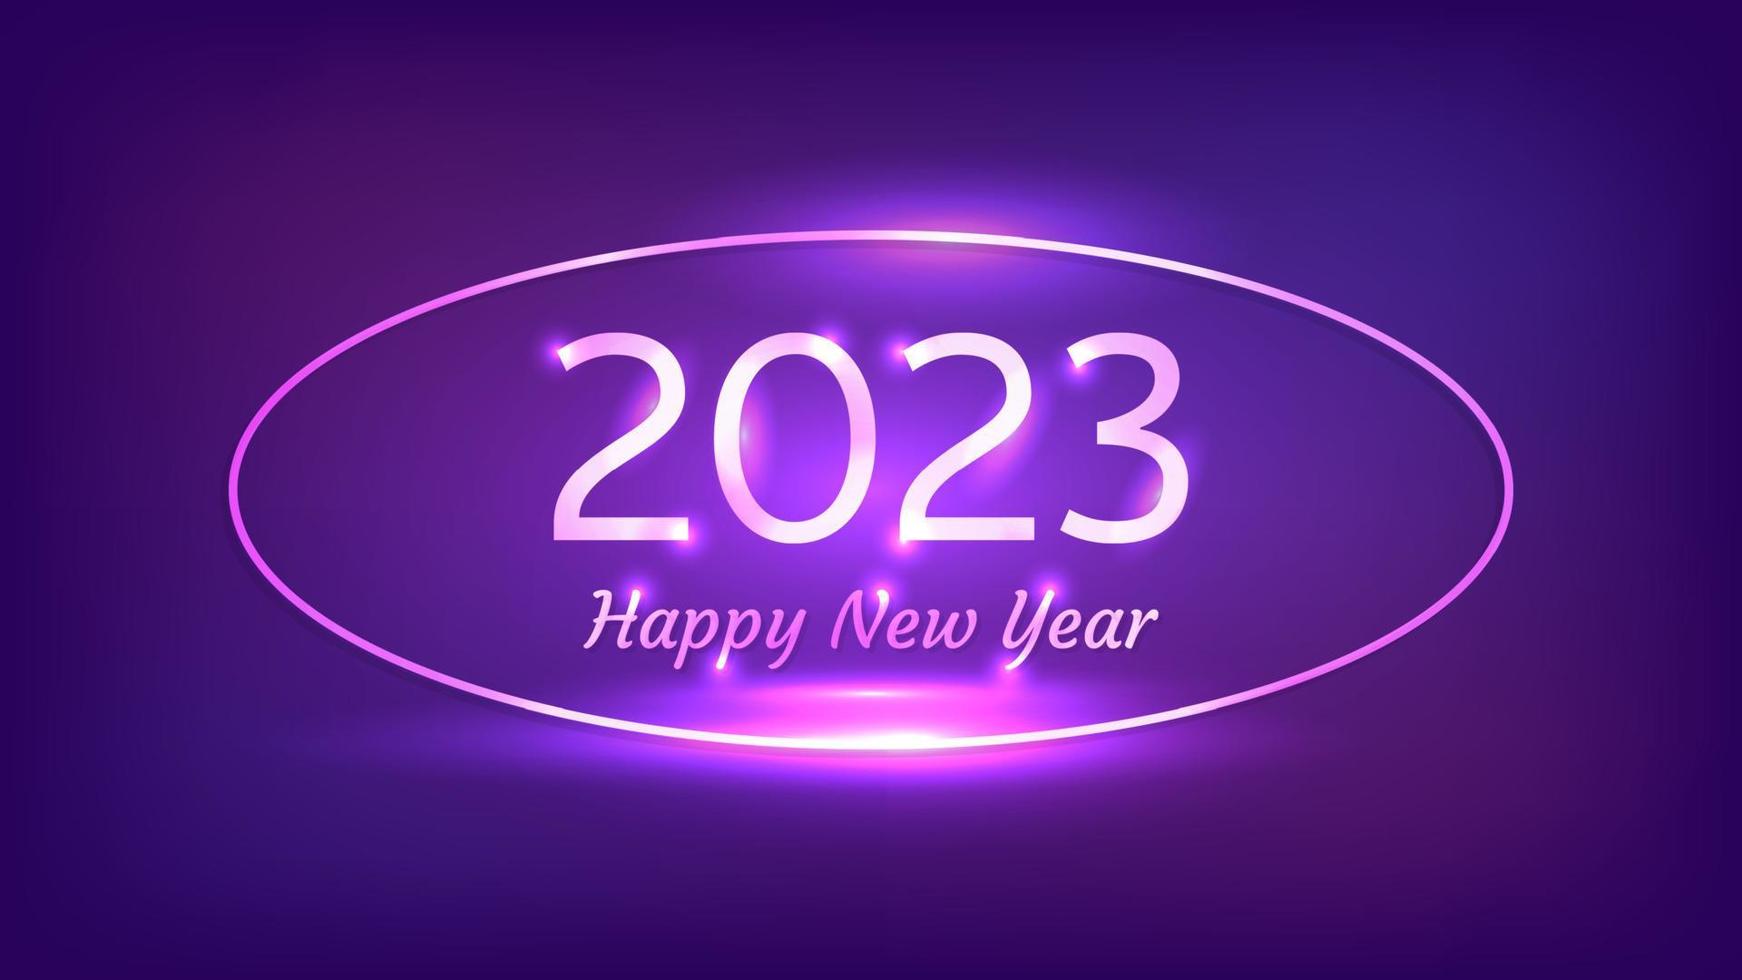 Bonne année 2023 fond néon. cadre ovale néon avec effets brillants pour carte de voeux, flyers ou affiches de vacances de noël. illustration vectorielle vecteur